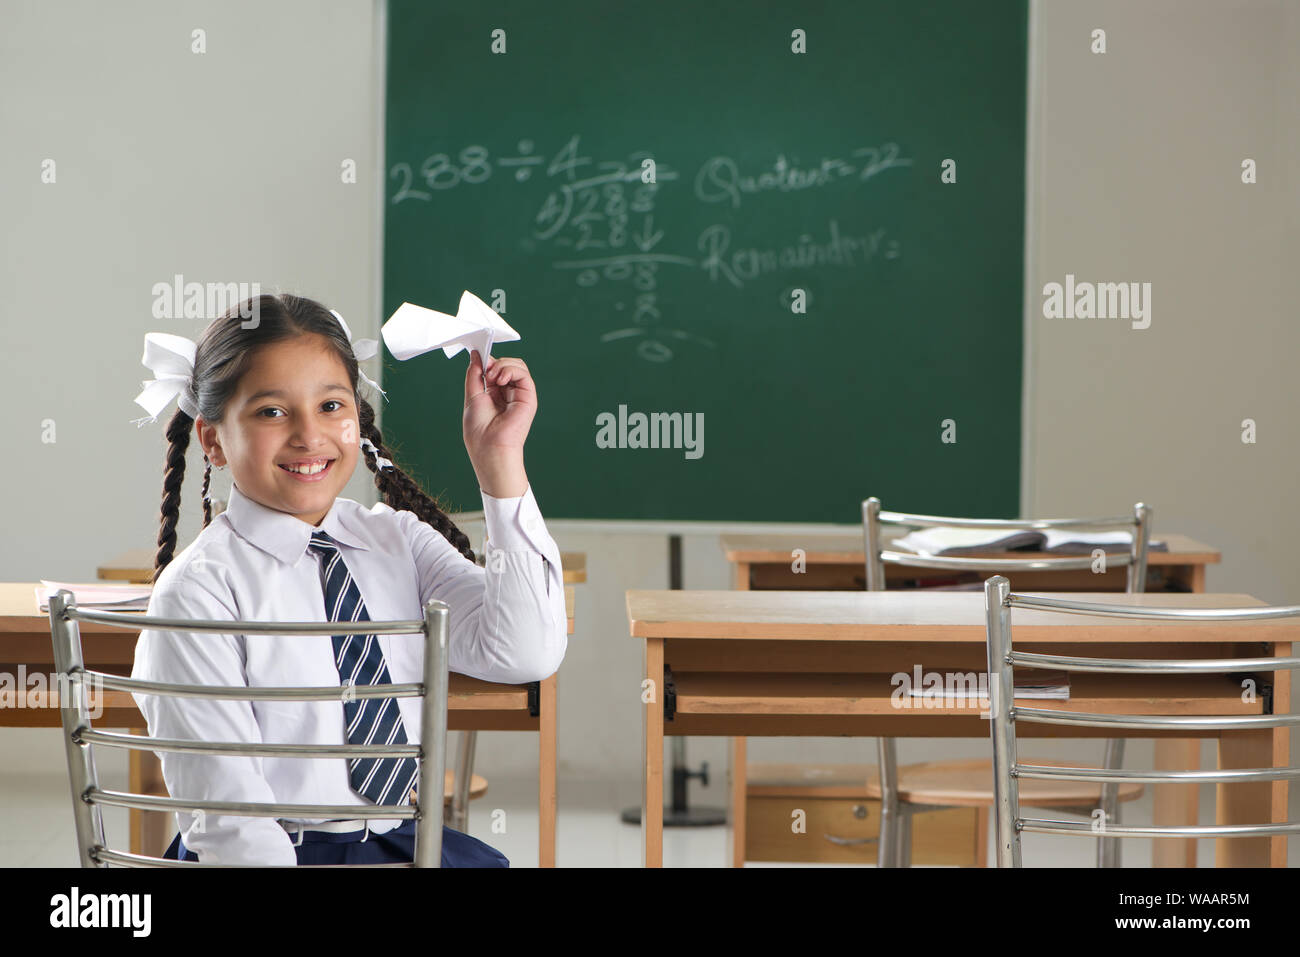 Une écolière jouant avec un avion en papier dans une salle de classe Banque D'Images